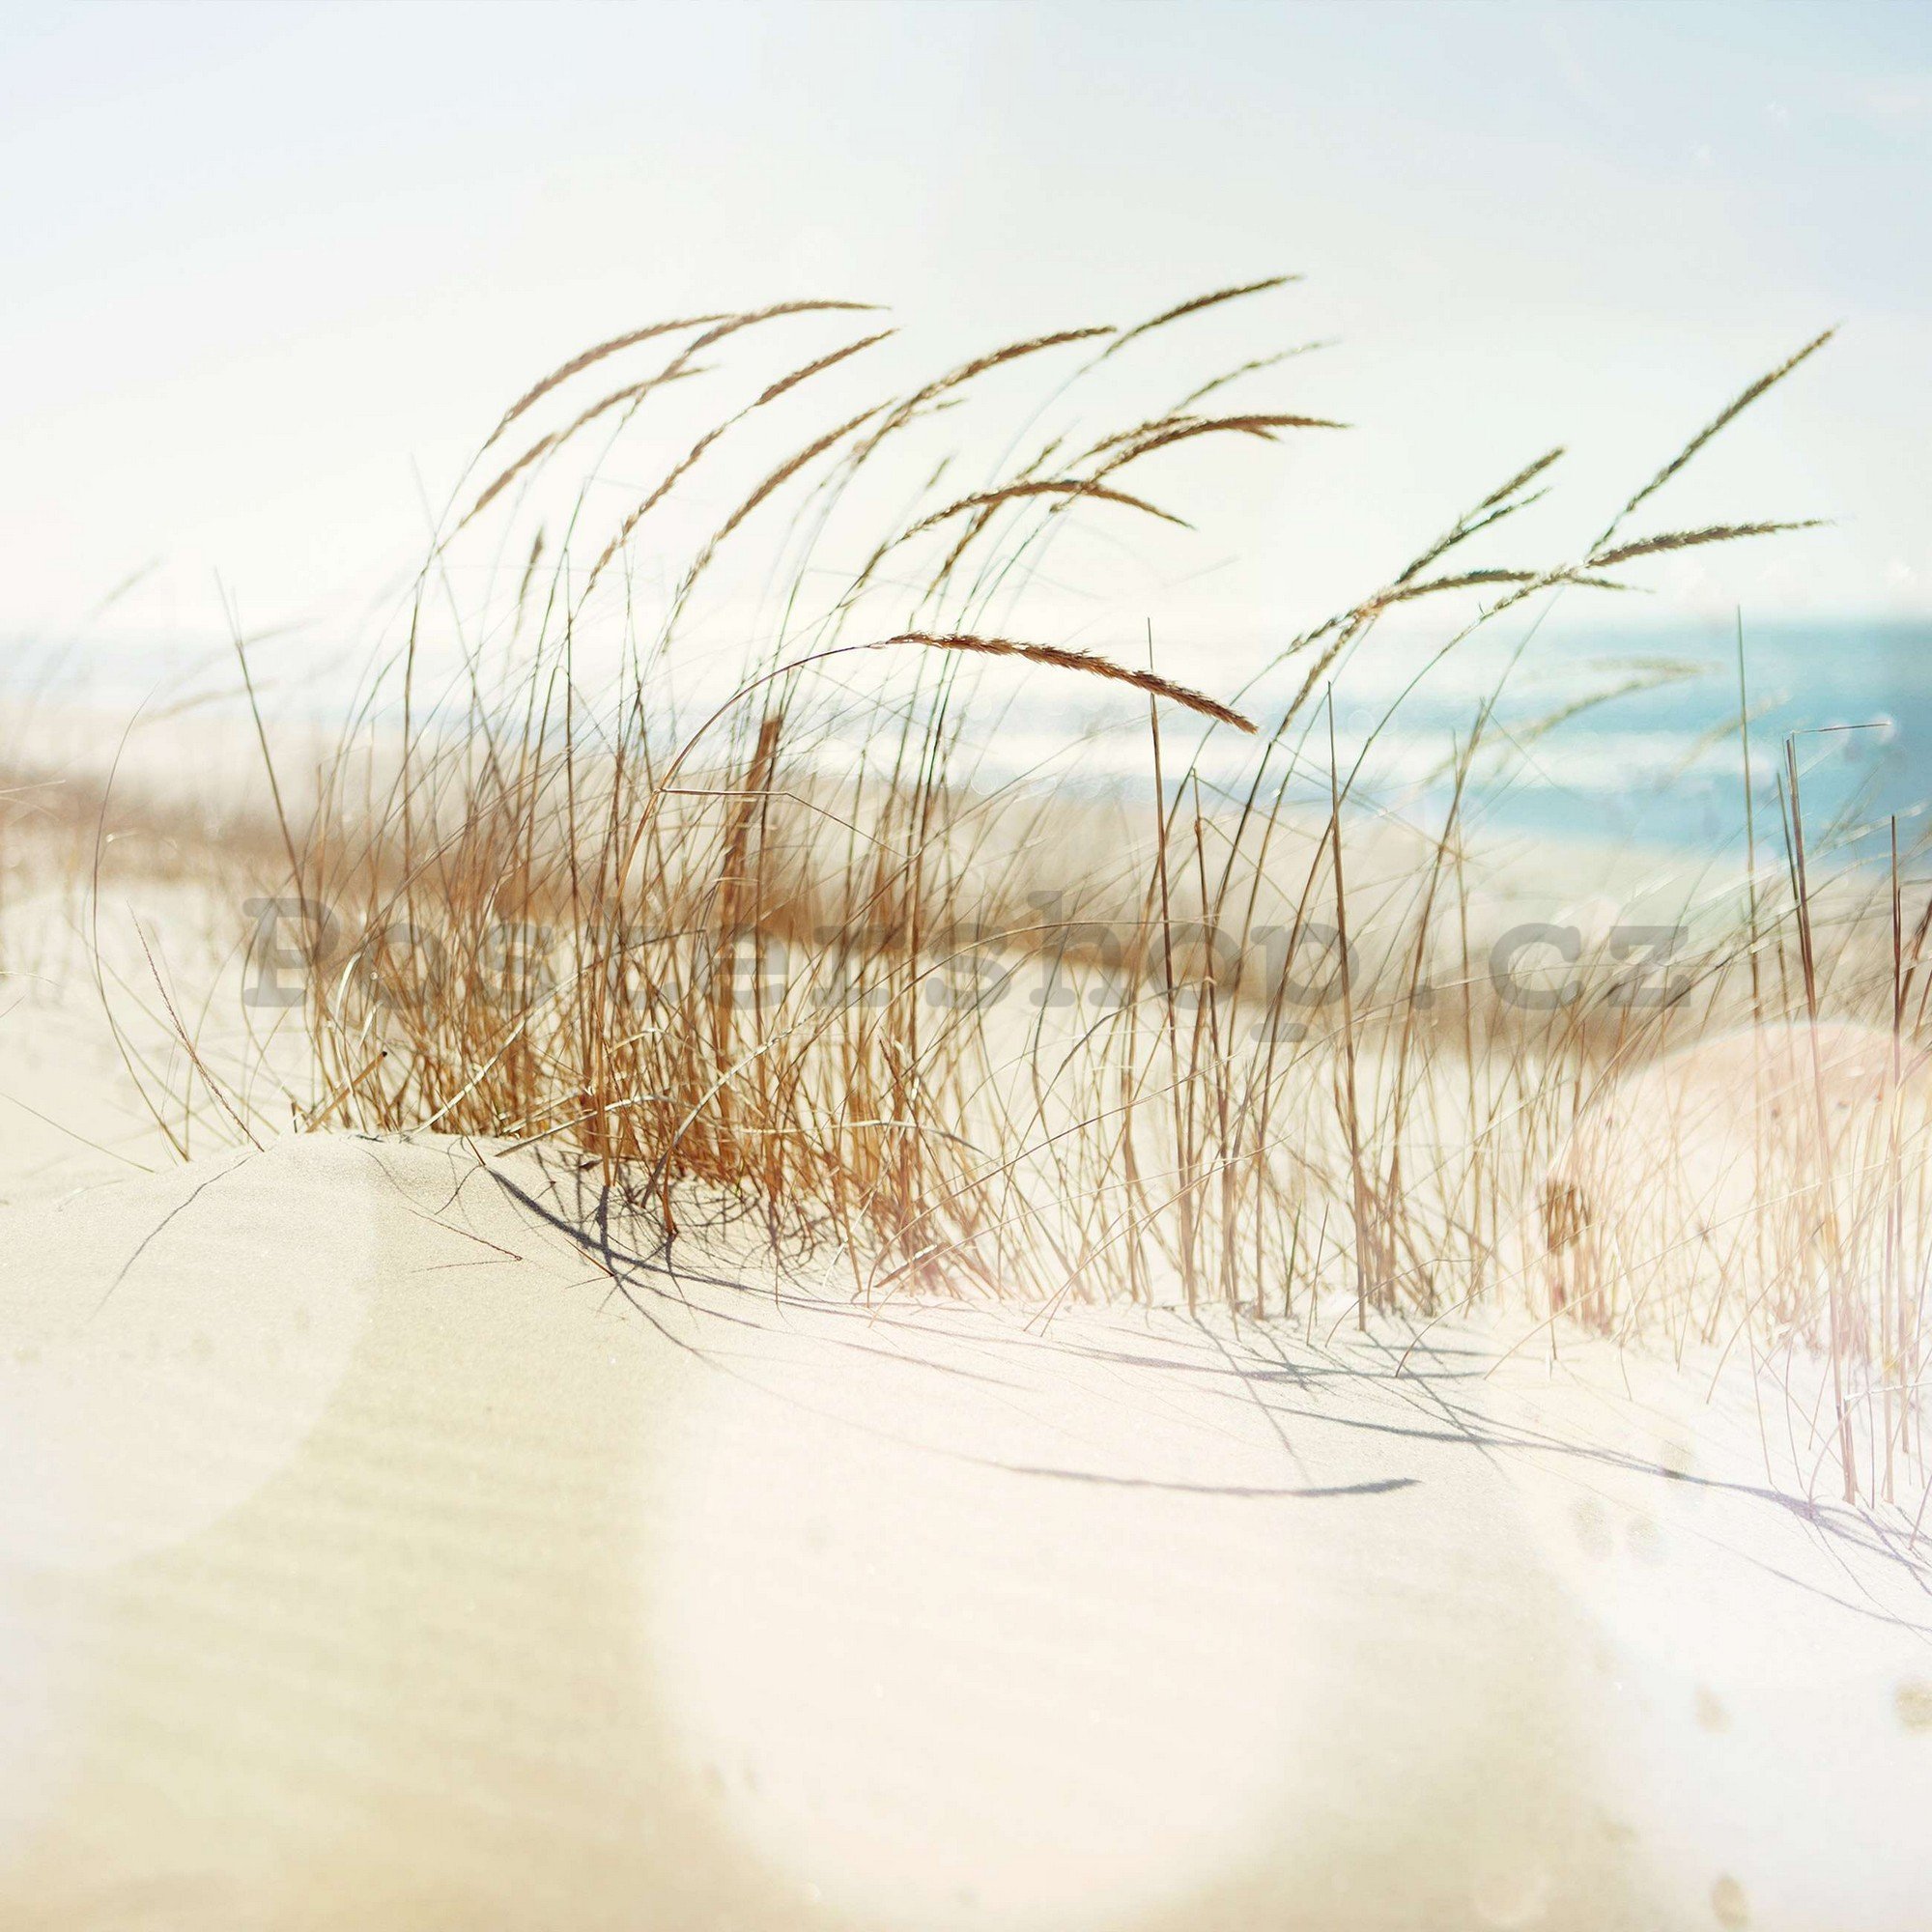 Fototapeta vliesová: Písečná duna - 416x254 cm